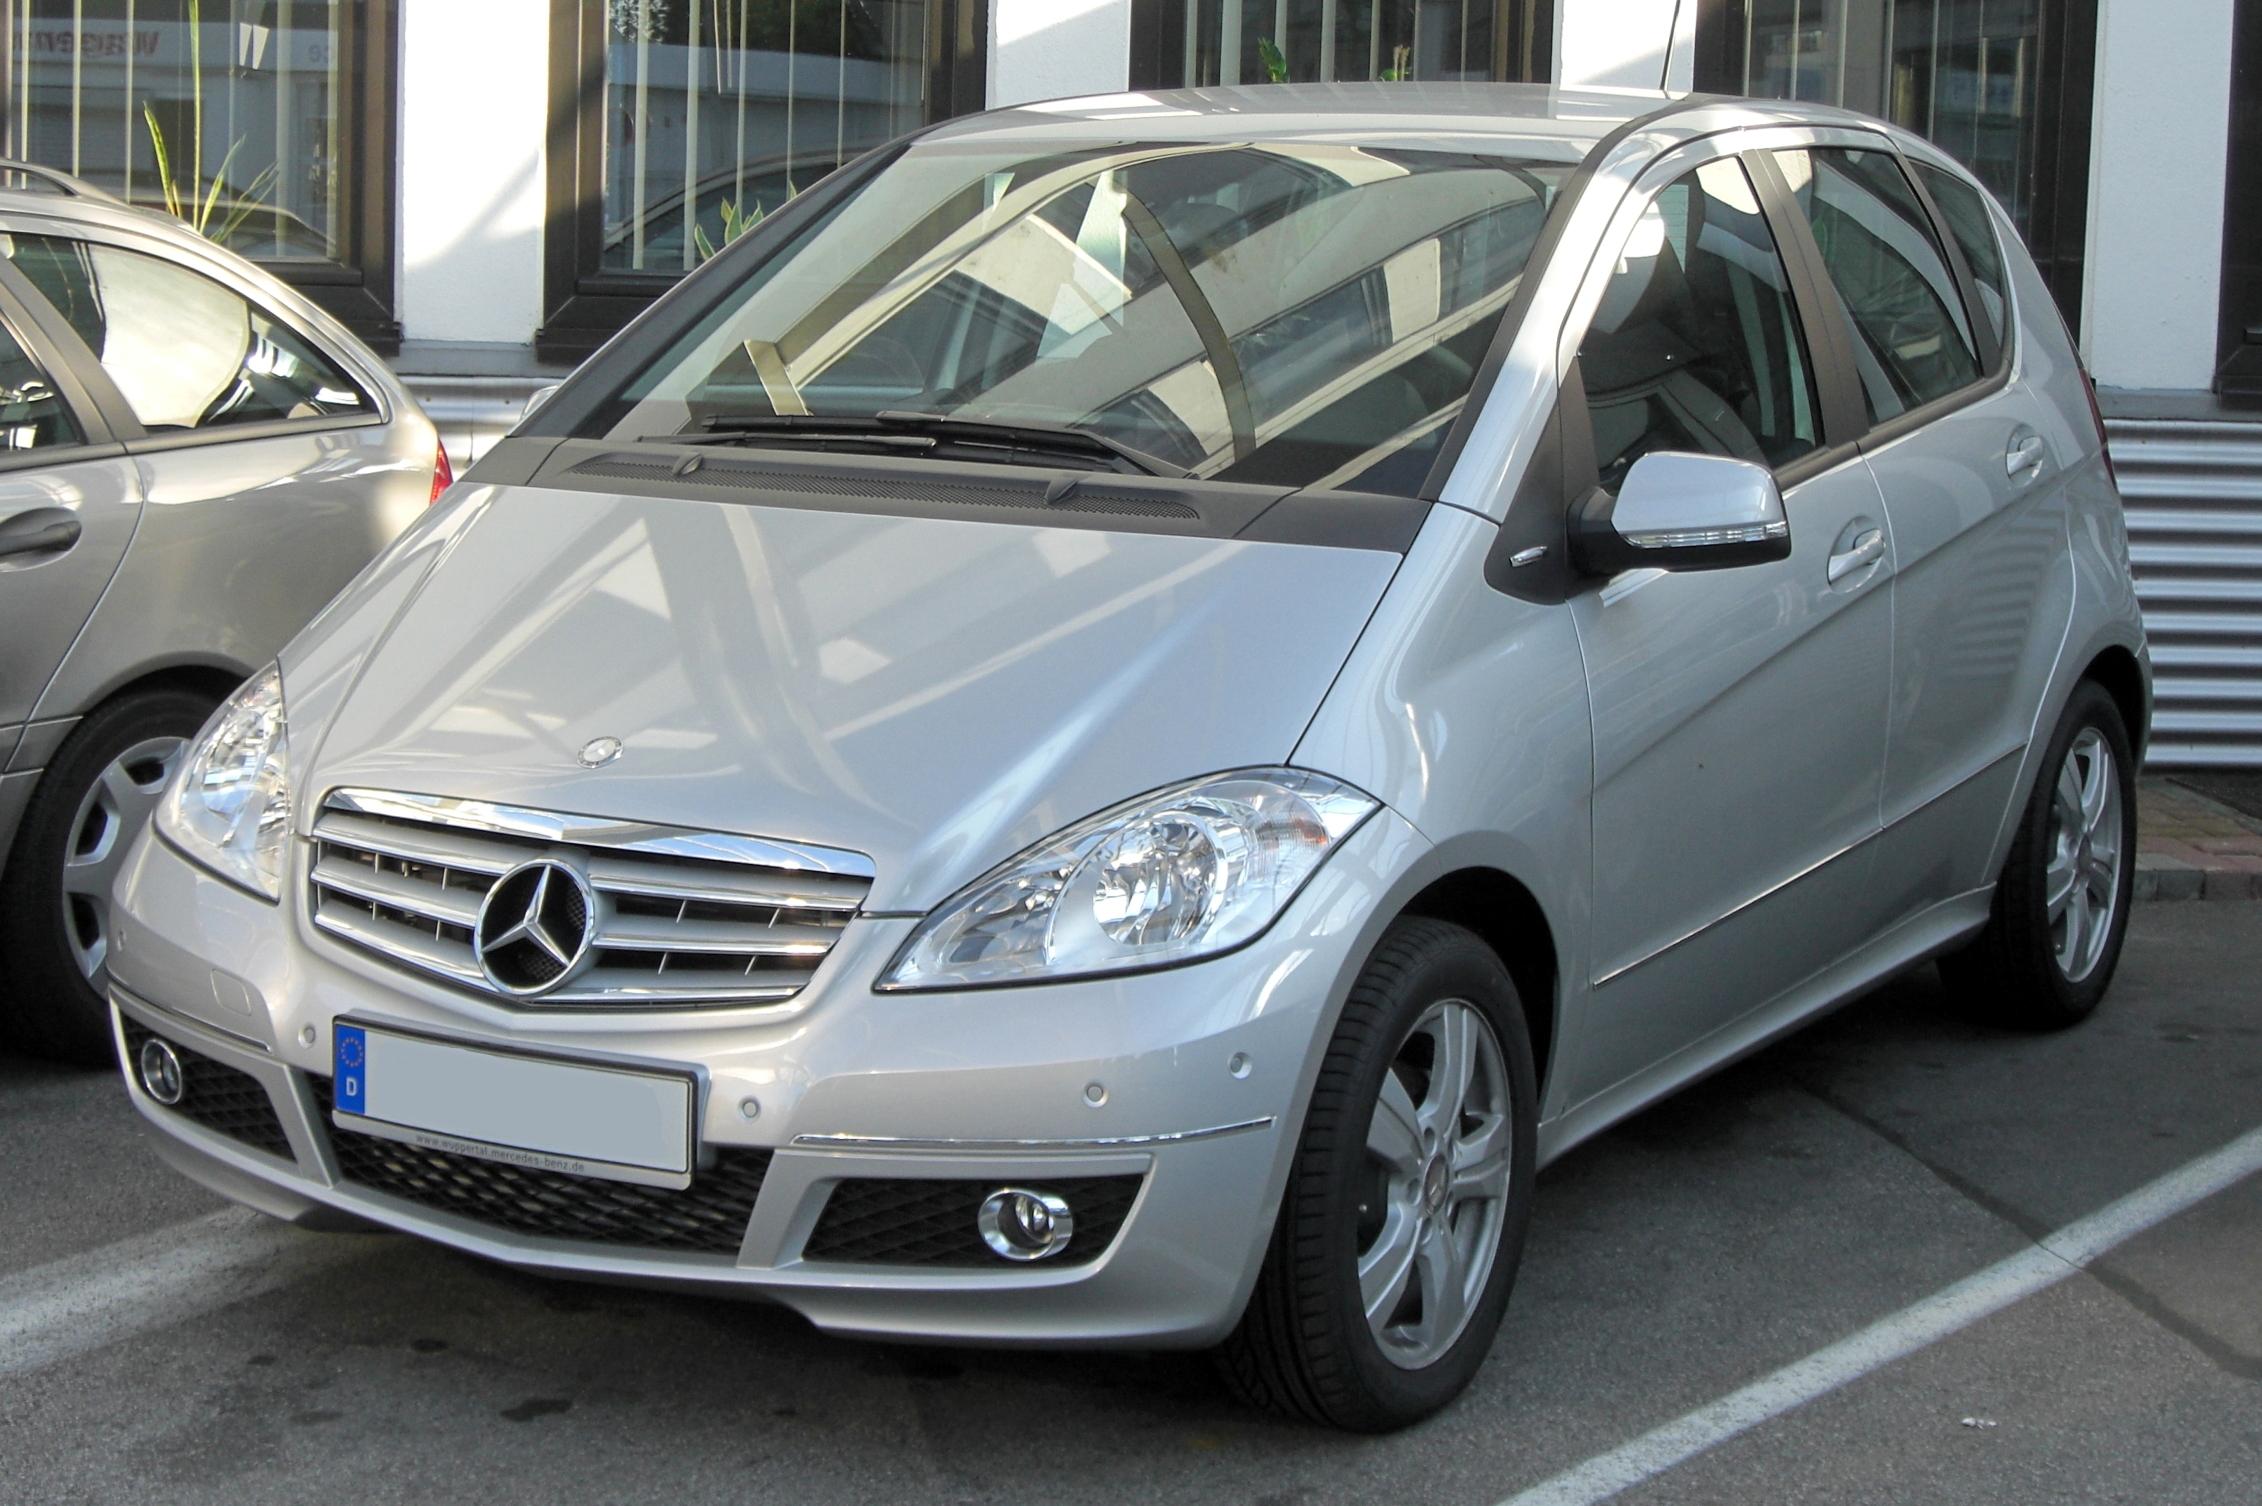 File:Mercedes A-Klasse Facelift (W169) front-1.jpg - Wikipedia